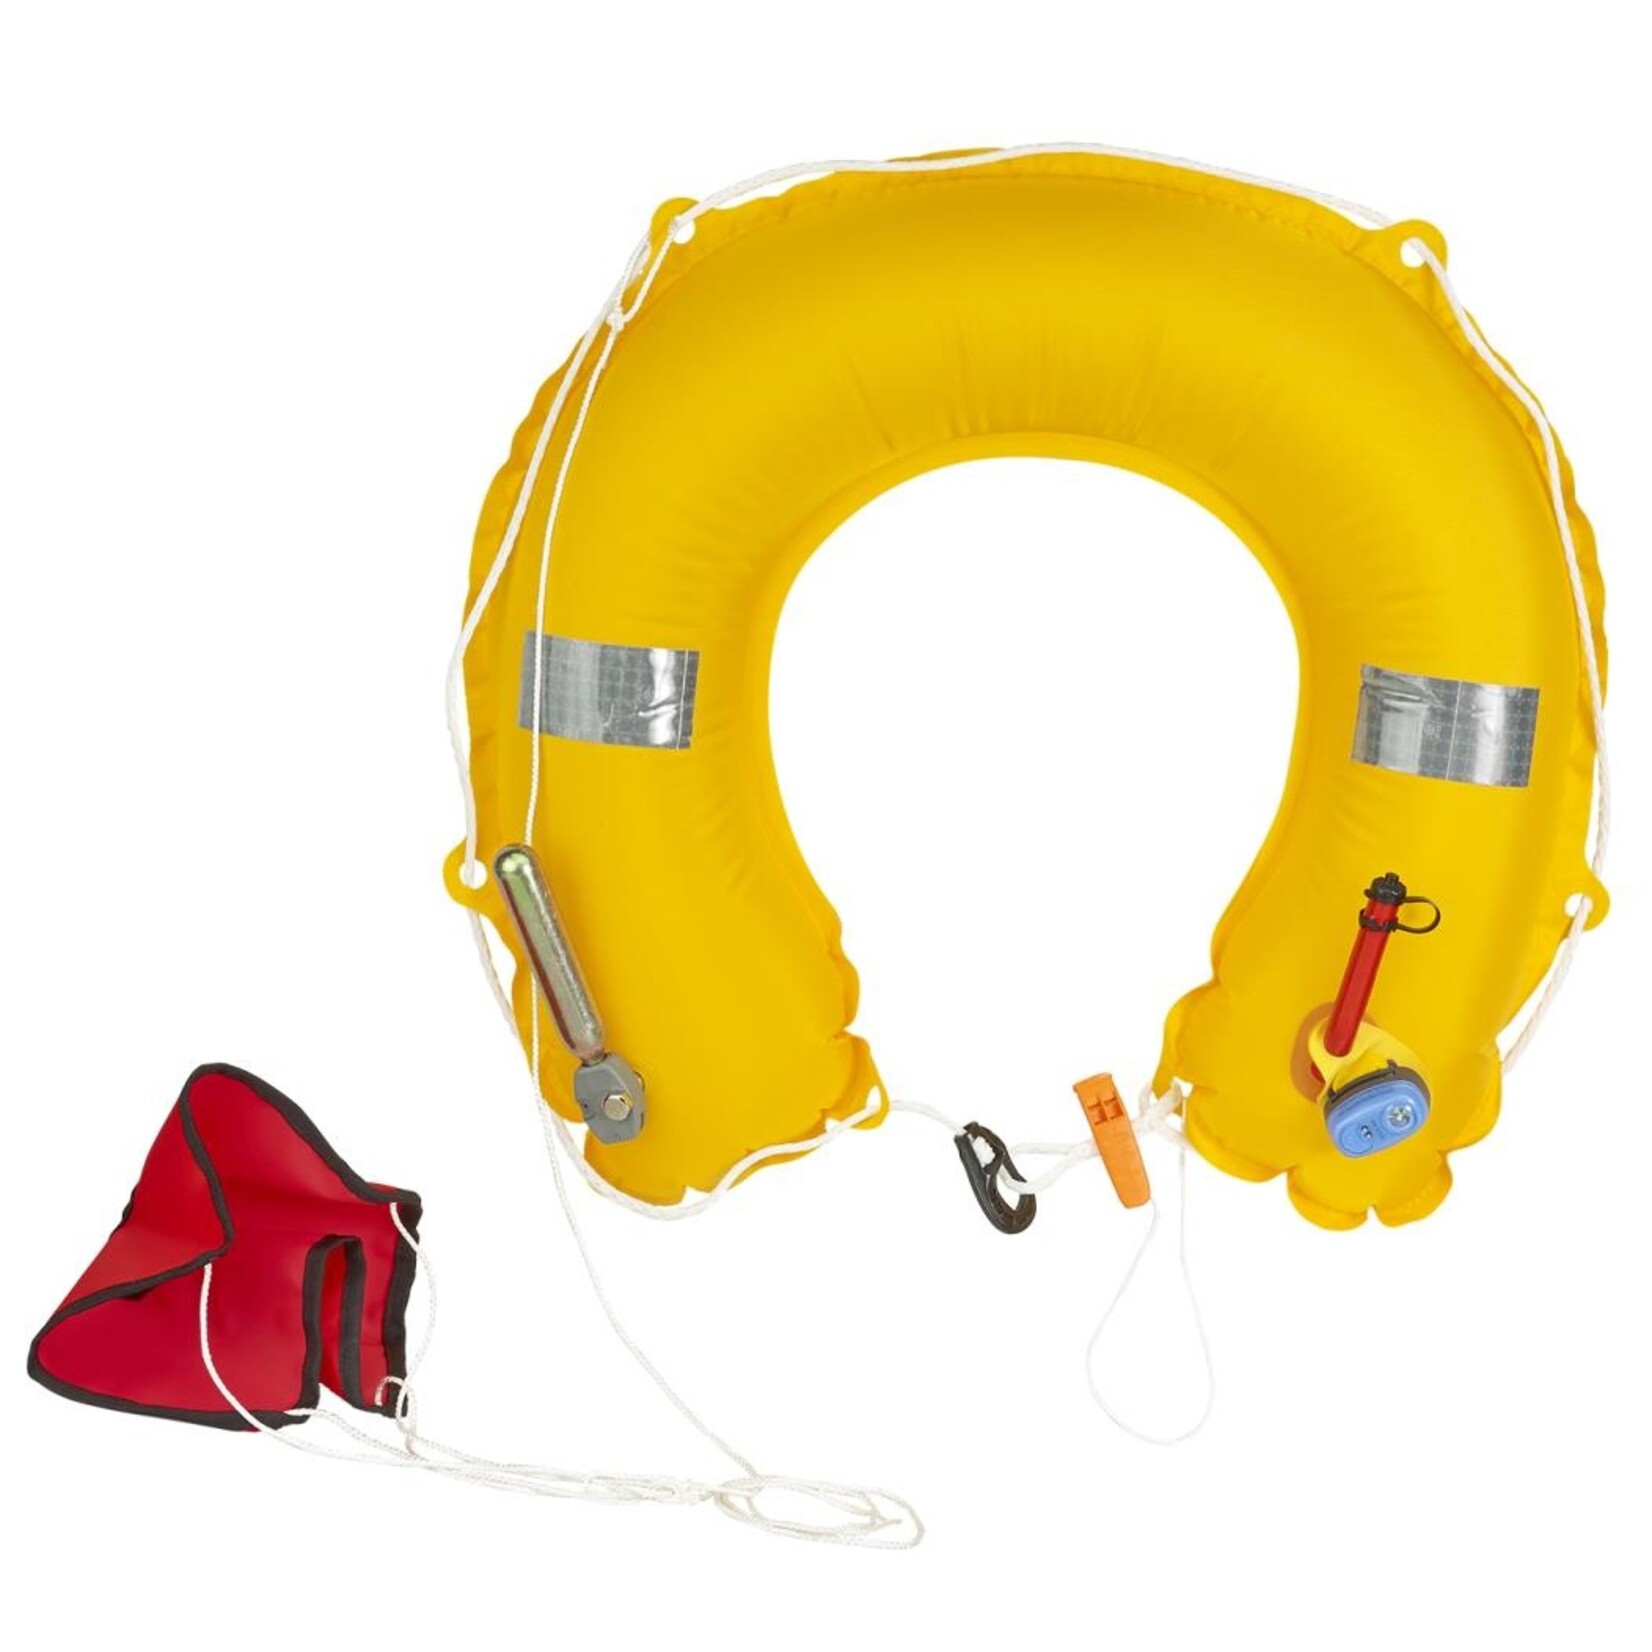 Plastimo Horseshoe buoy inflat yellow with light